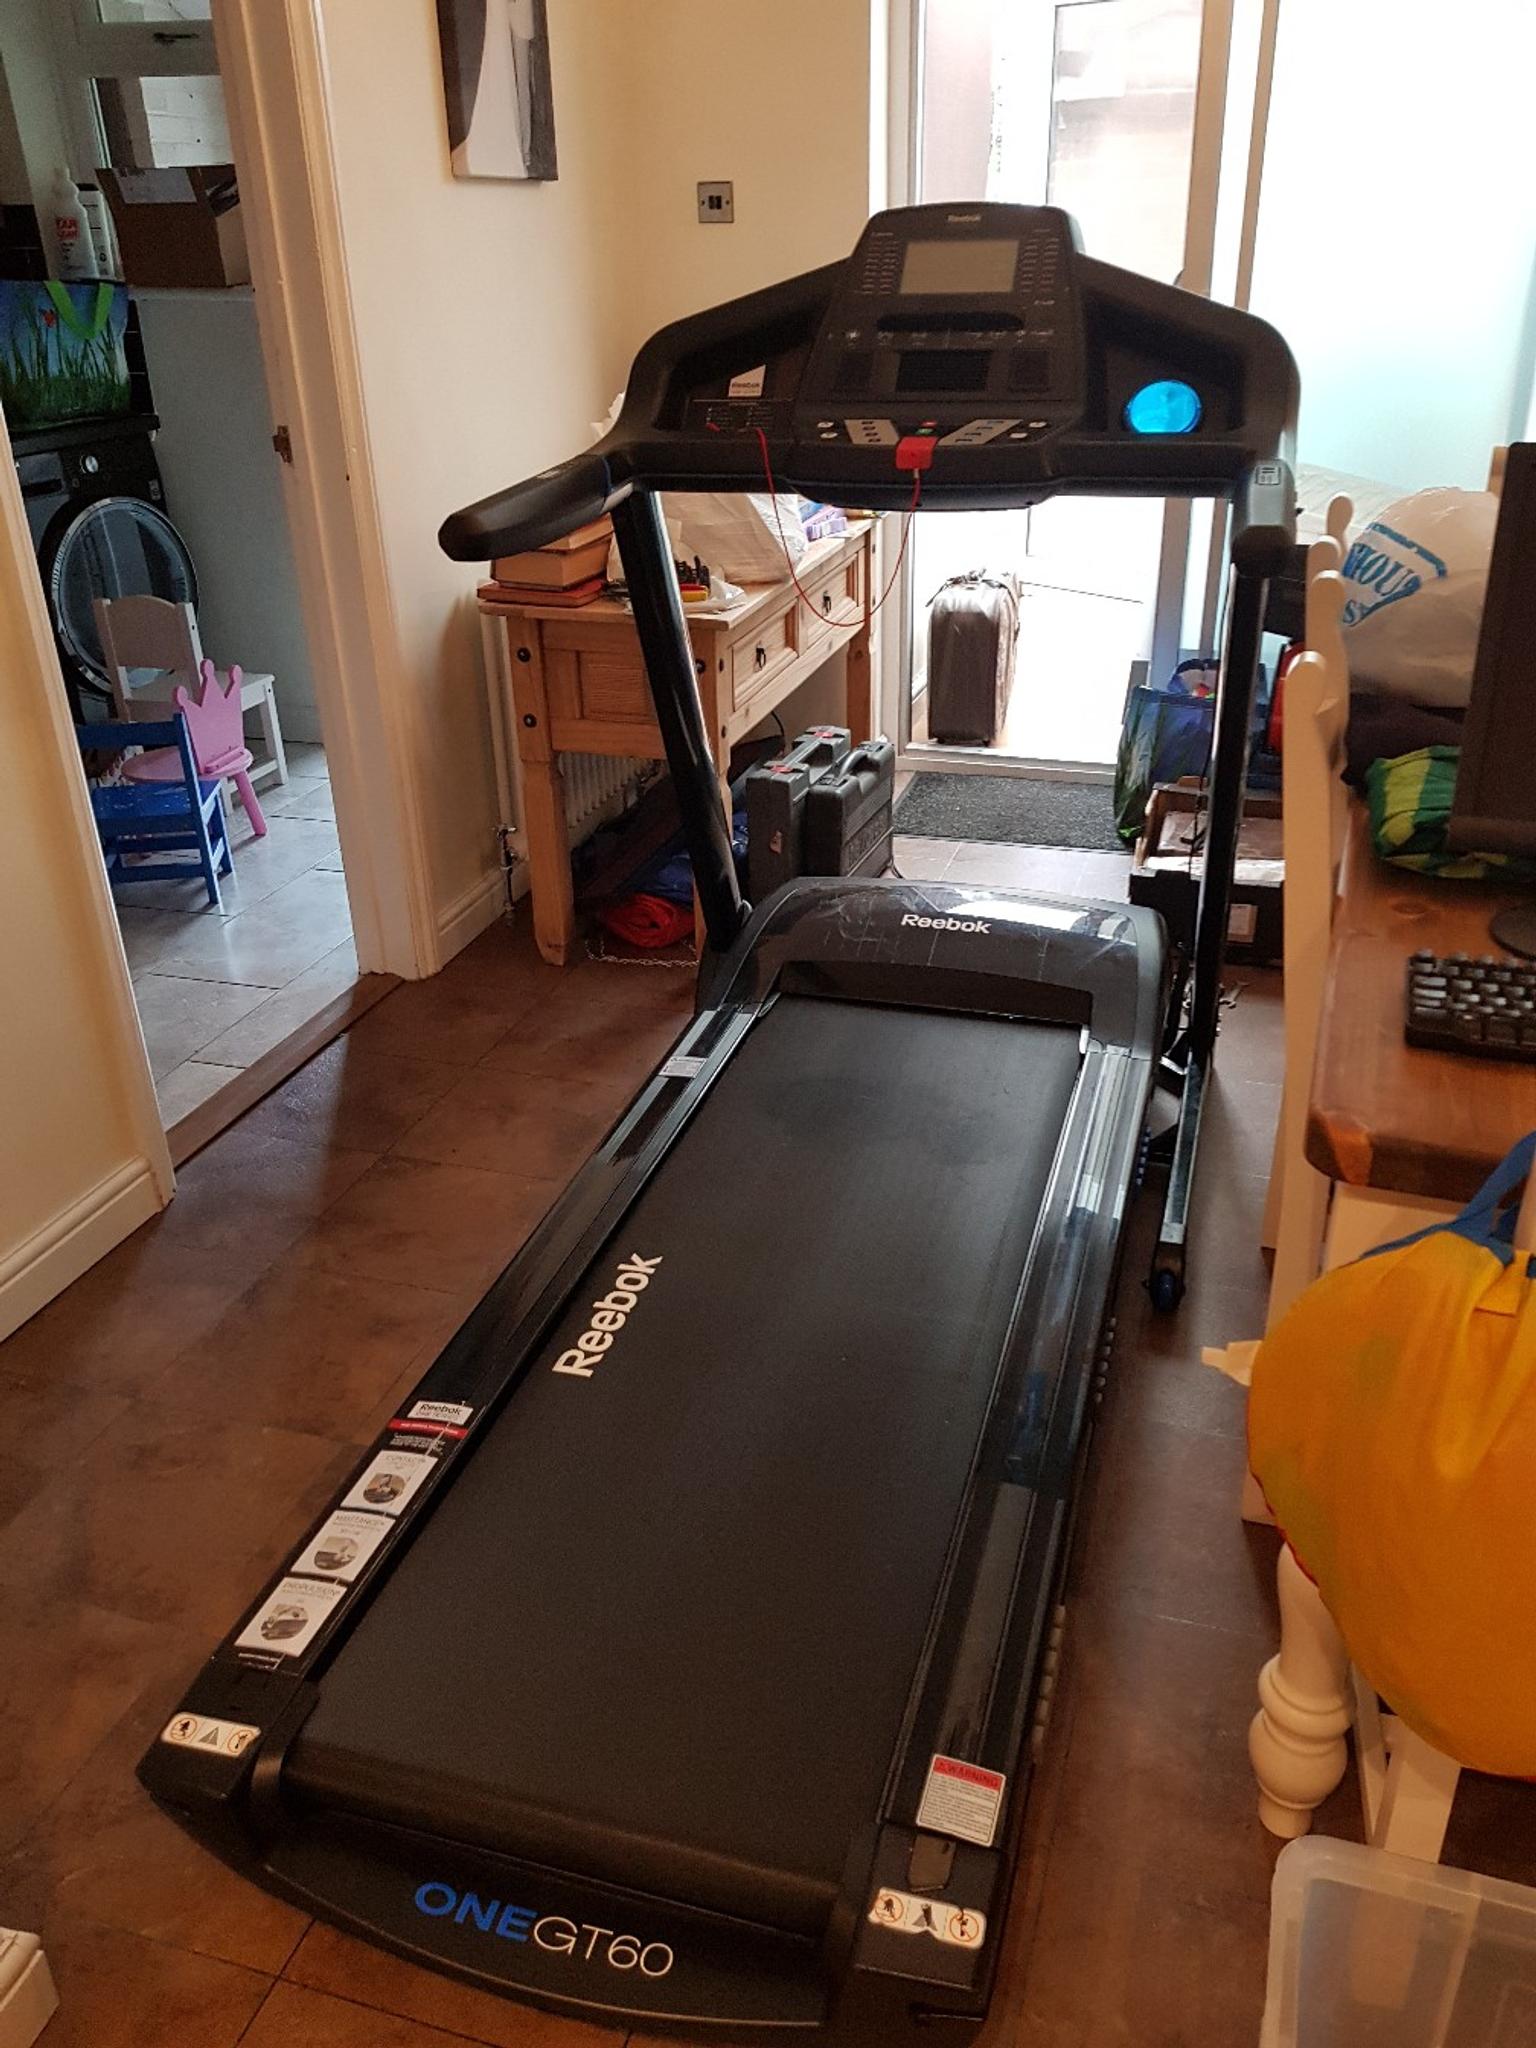 gt60 treadmill